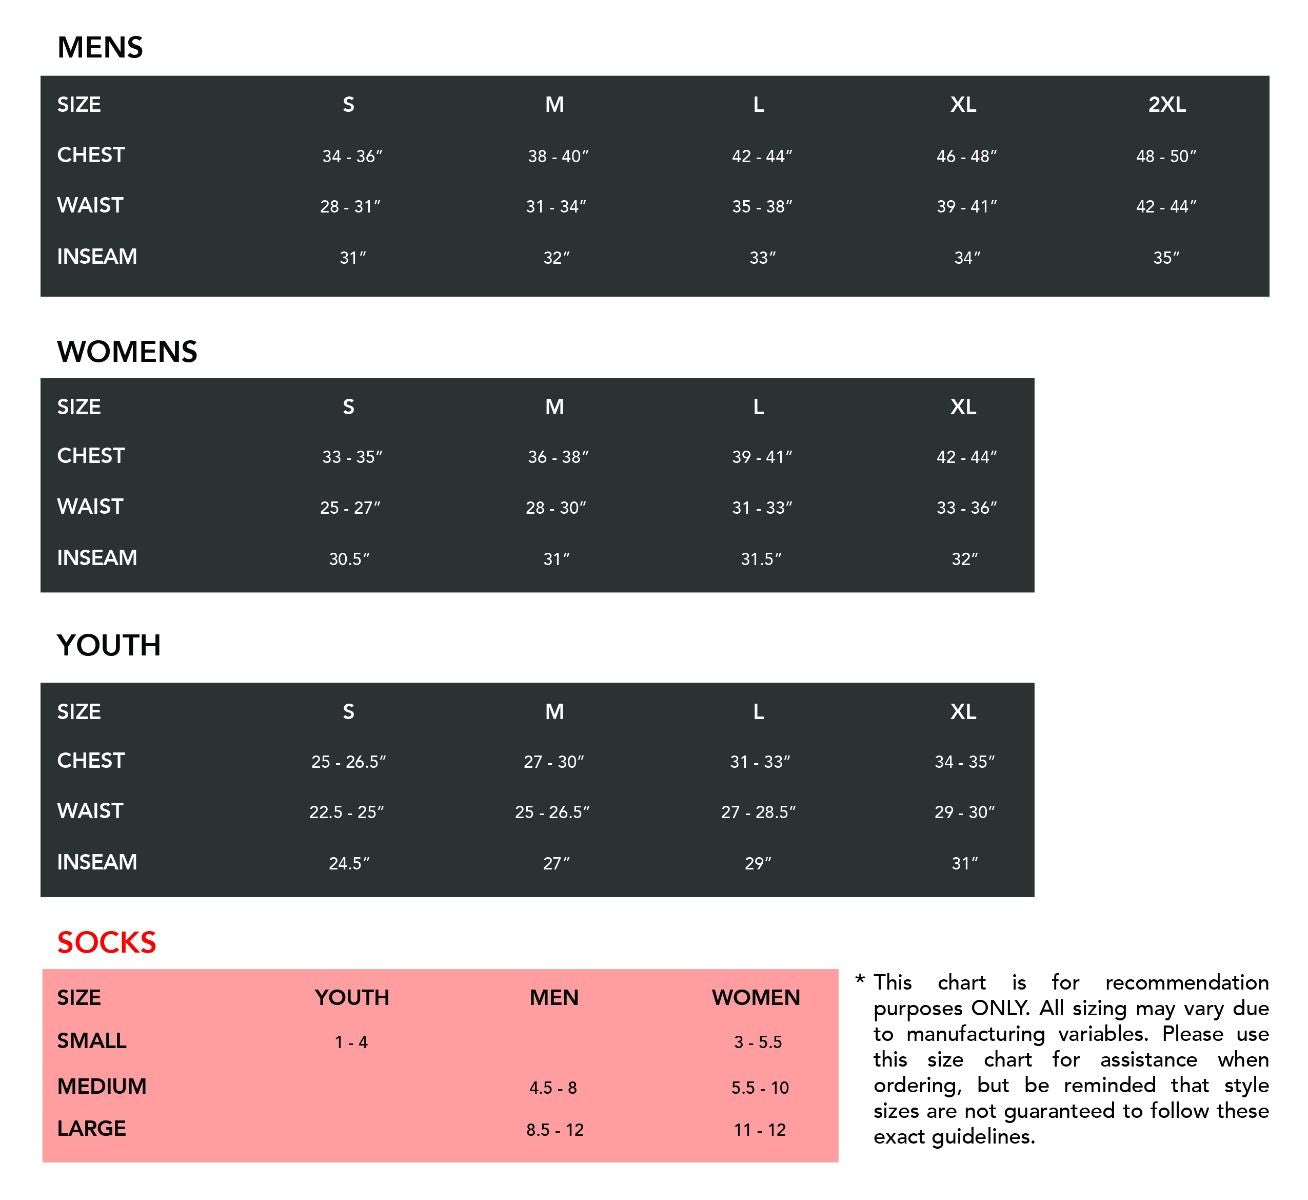 adidas jacket youth size chart